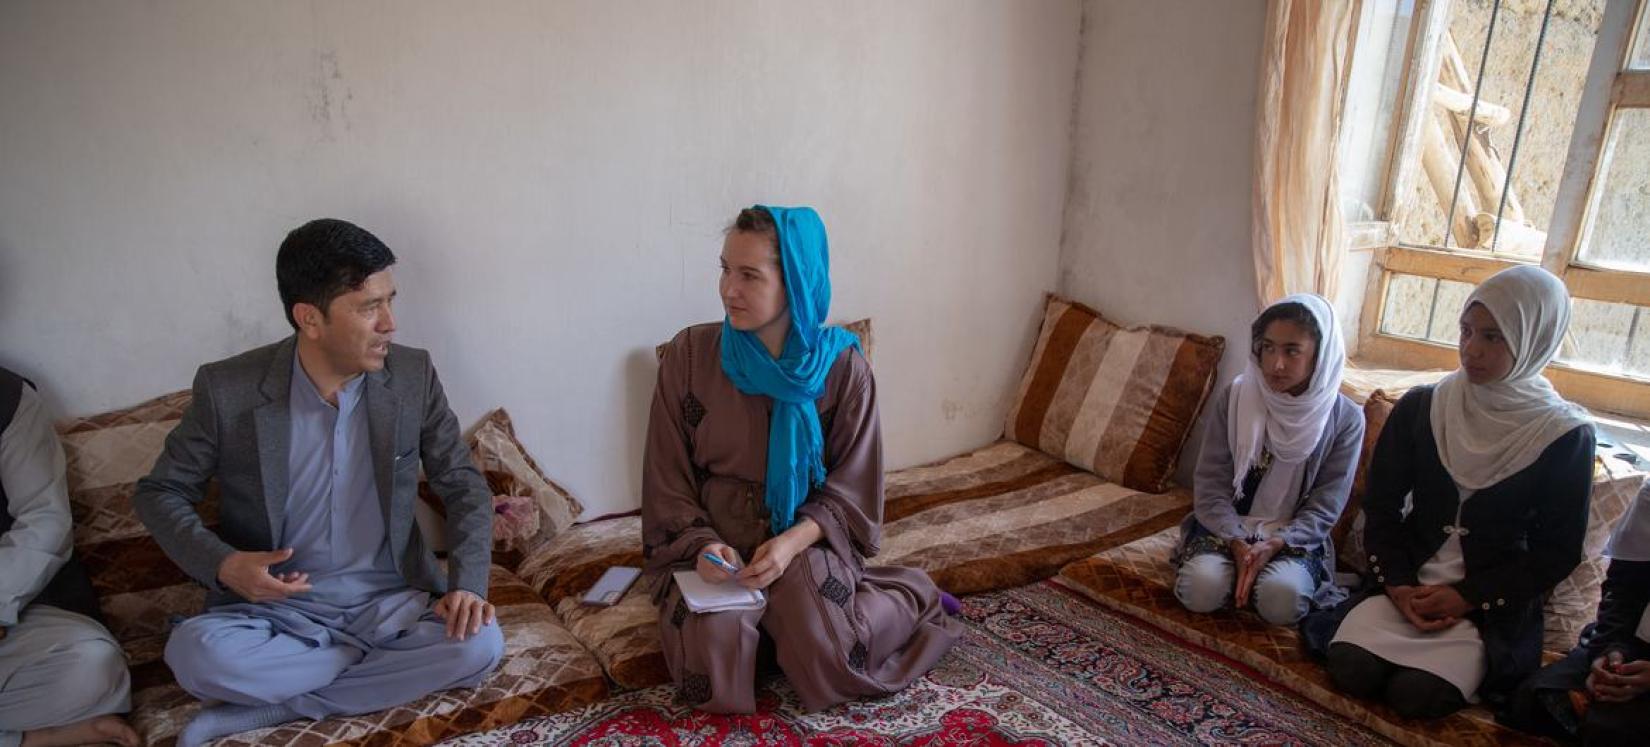 Veronica Houser, funcionária do UNICEF, encontra-se com afegãos.